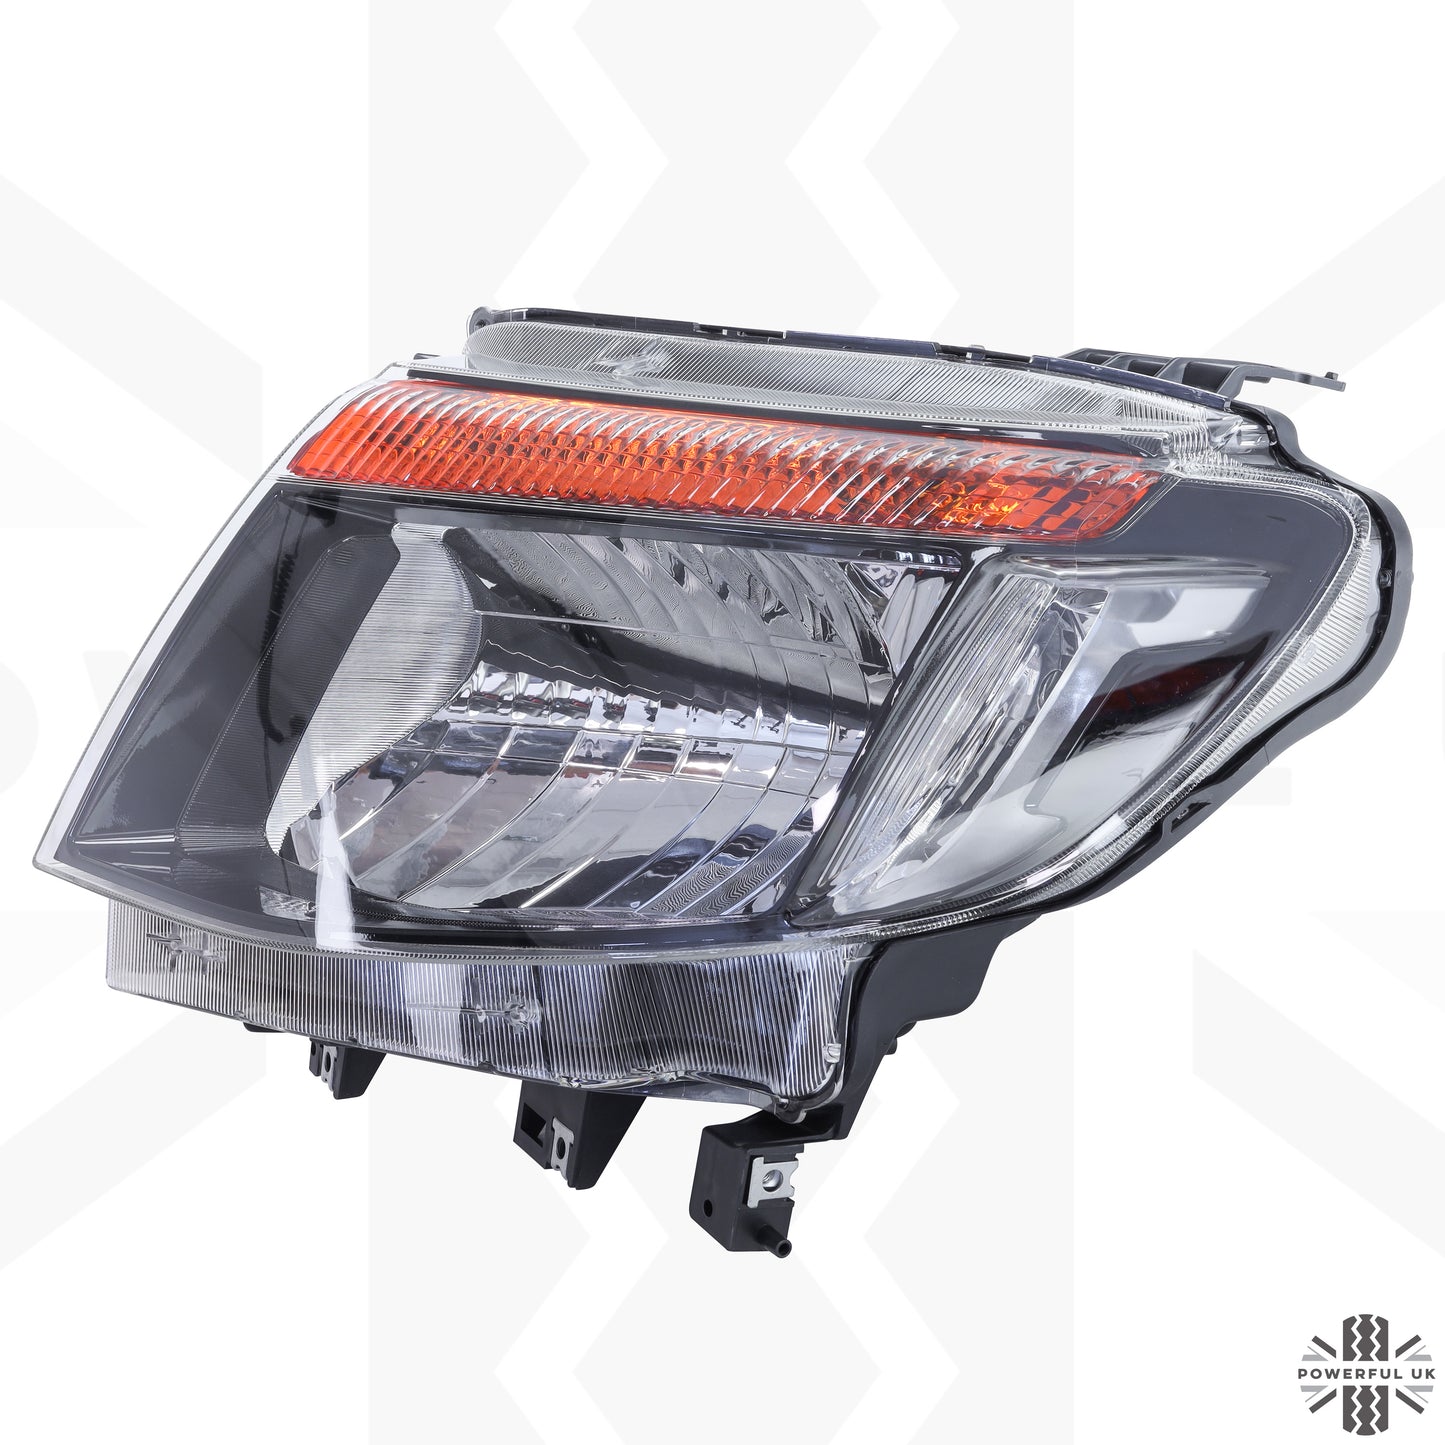 Headlight for Ford Ranger 2012-15 - LEFT